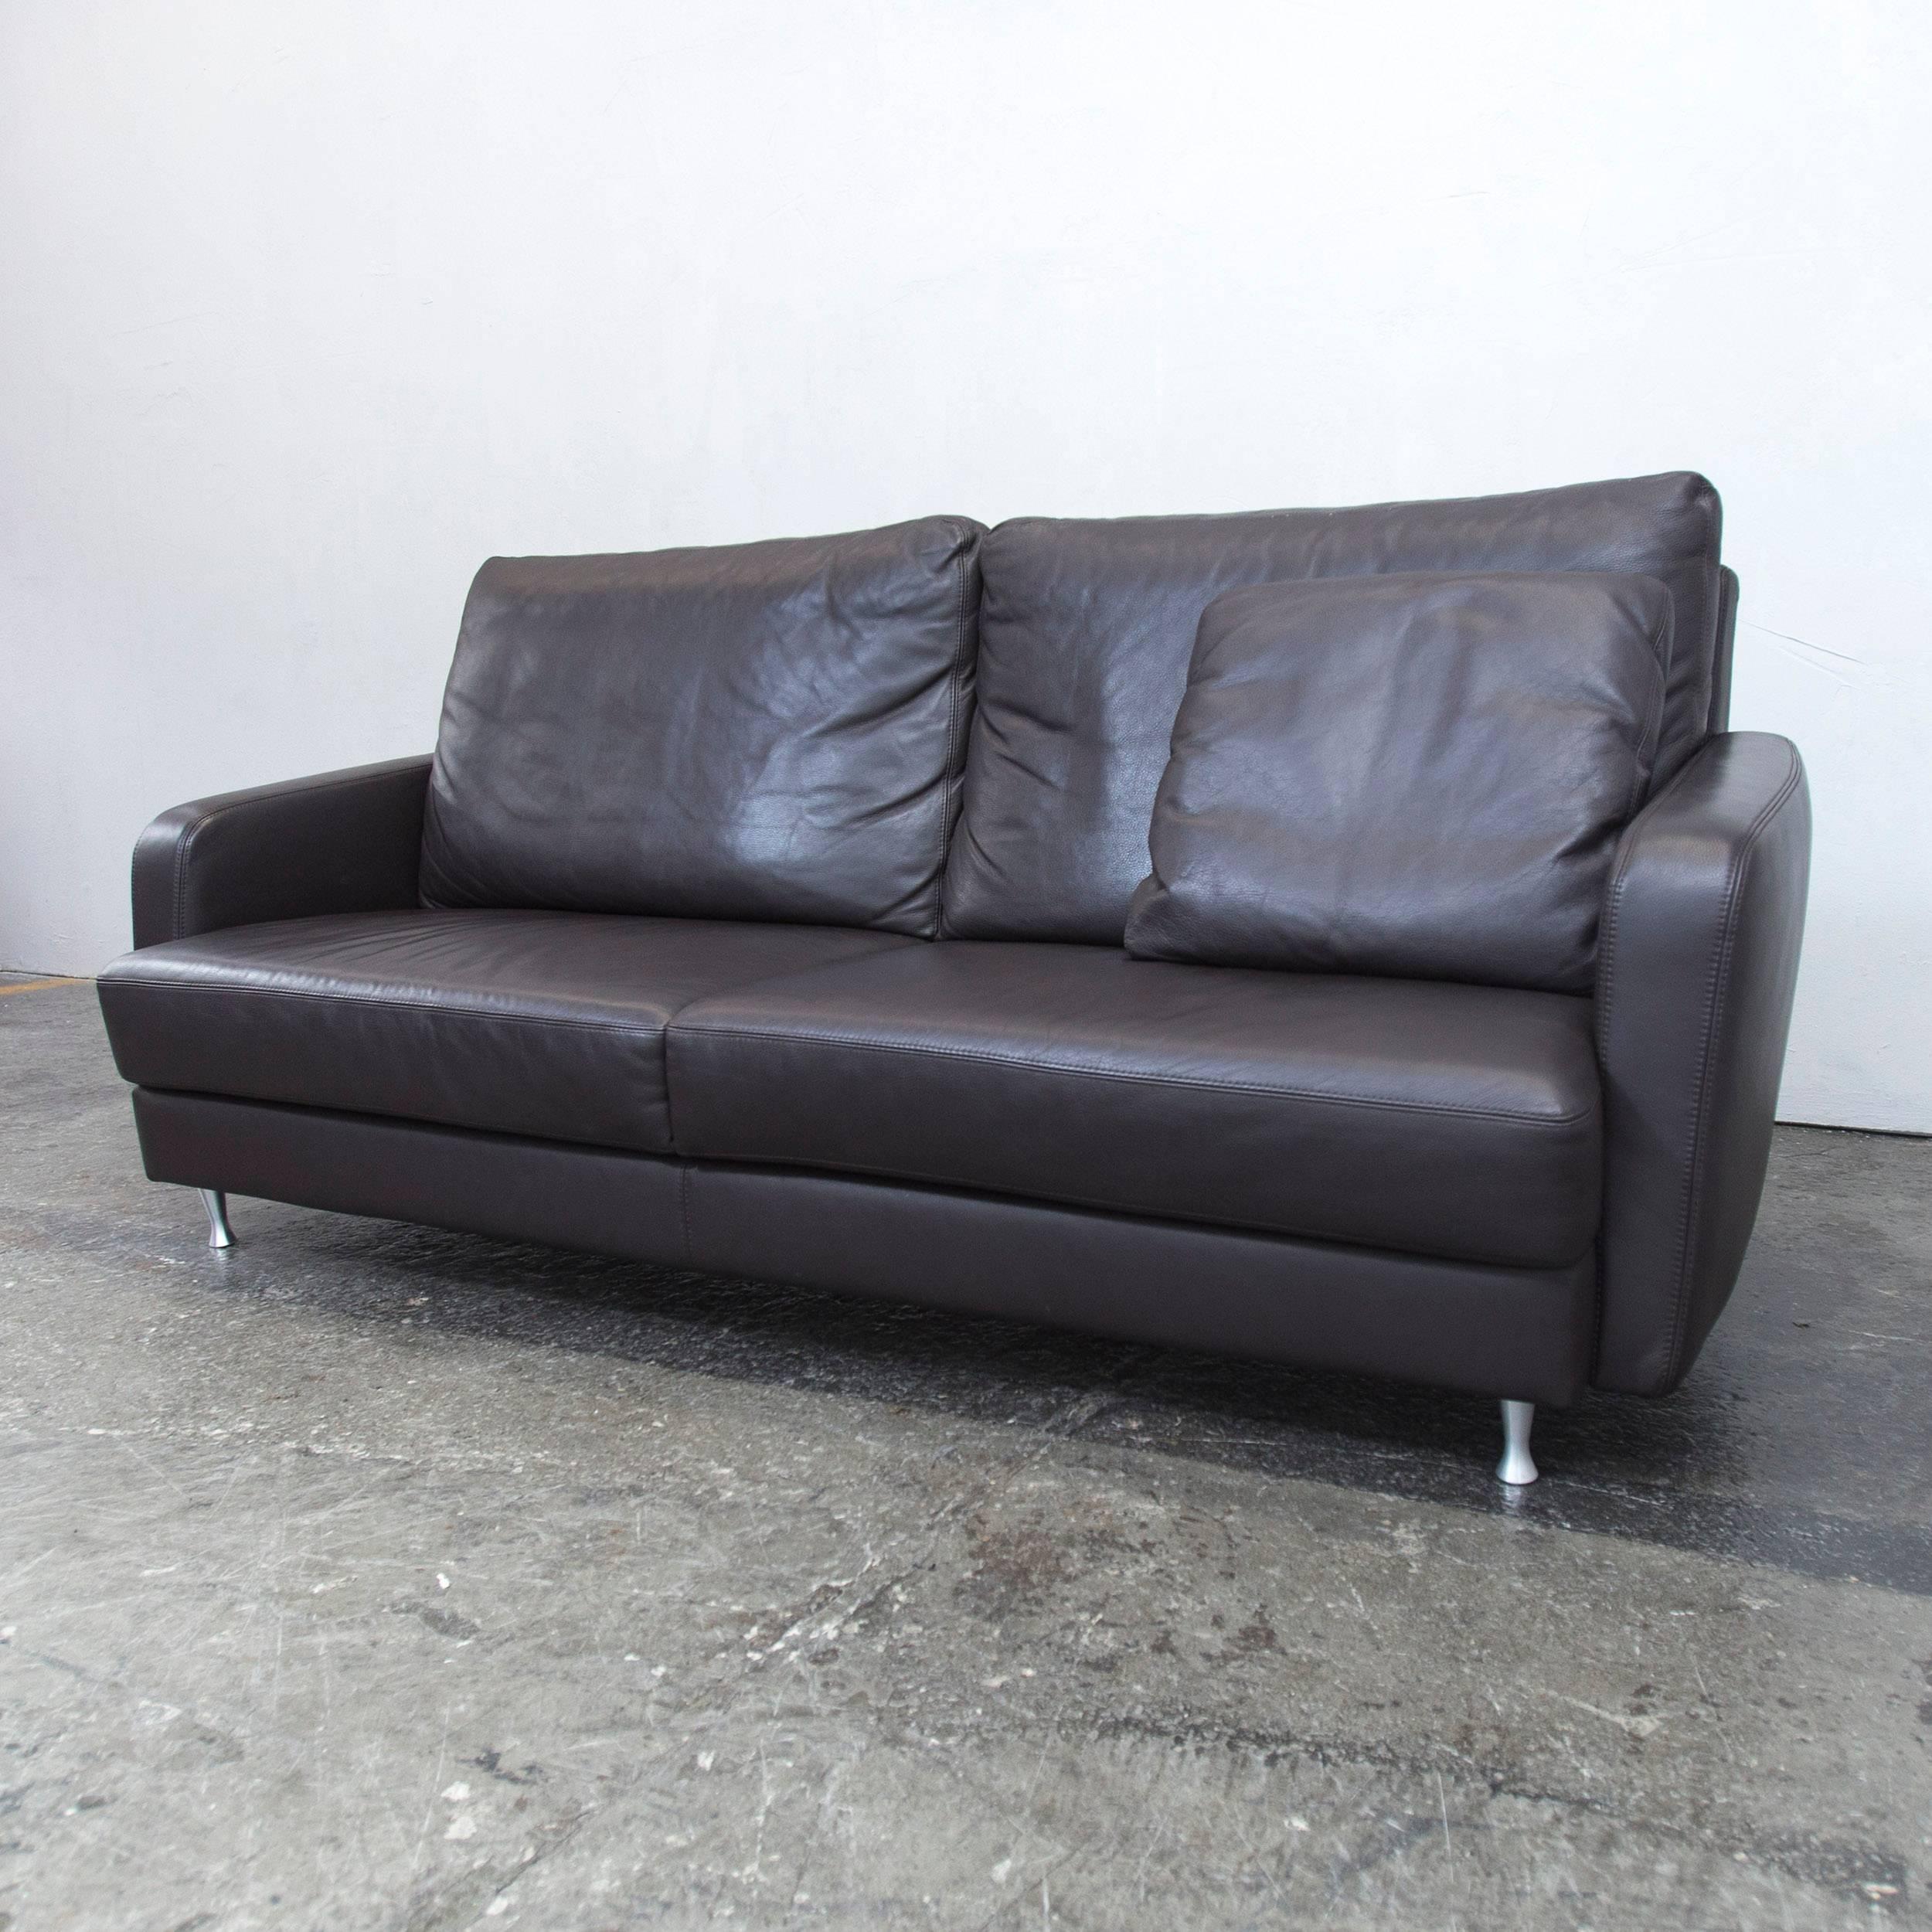 German Ewald Schillig Designer Sofa Brown Leather Three-Seat Couch, Modern